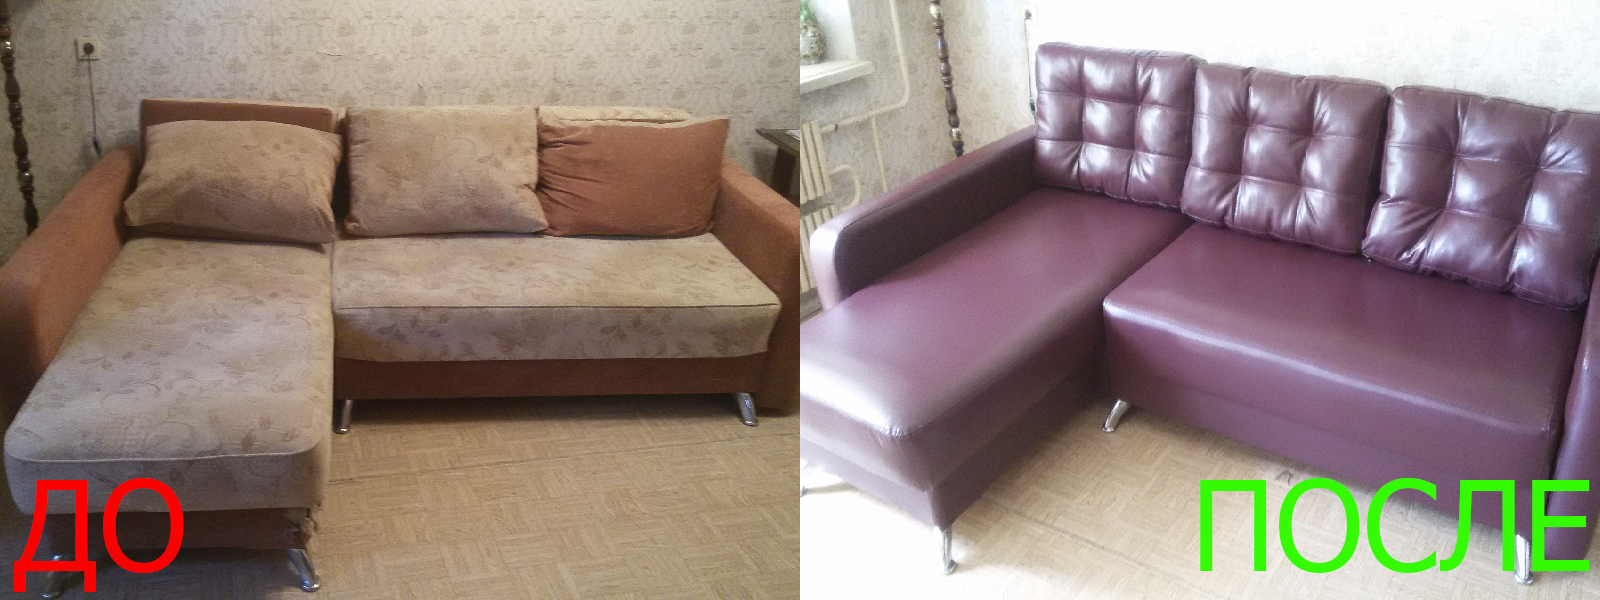 Ремонт диванов искусственной кожей в Казани разумные цены на услуги, опытные специалисты